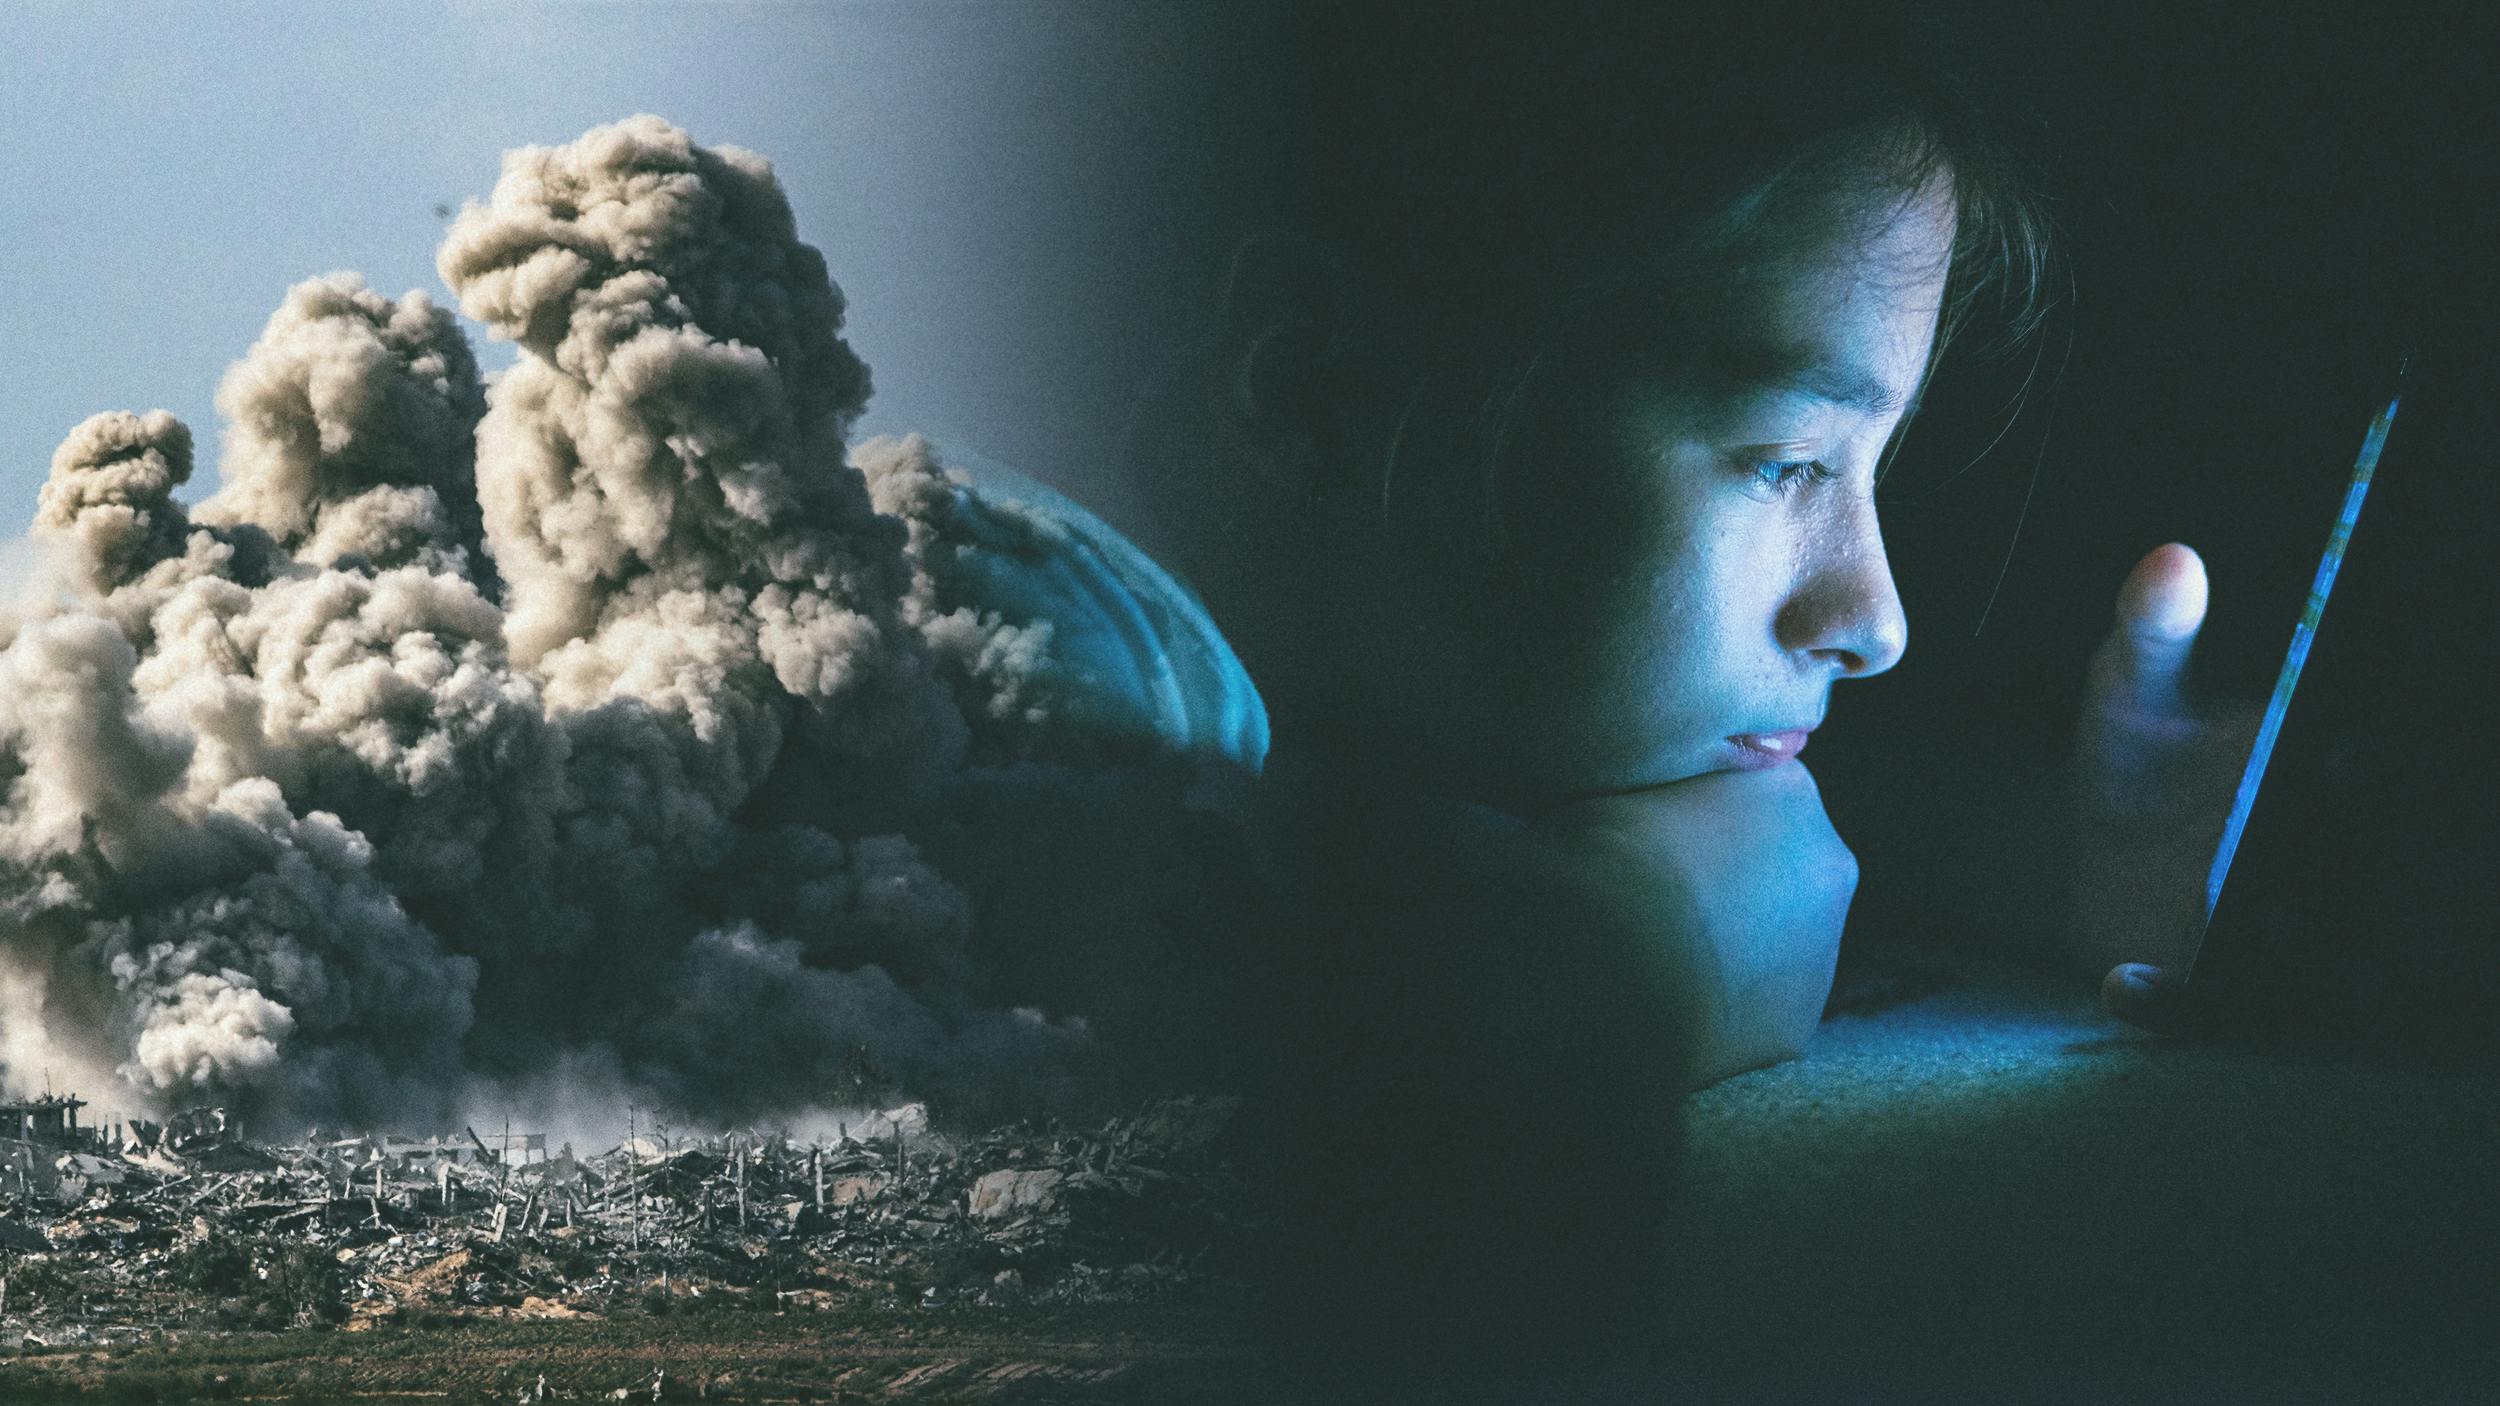 Collage. Links: Eine Explosion, man sieht eine dichte Rauchwolke. Wohnhäuser liegen in Schutt und Asche. Rechts: Ein Kind im Dunkeln am Smartphone. Das Licht des Telefons beleuchtet sein Gesicht.